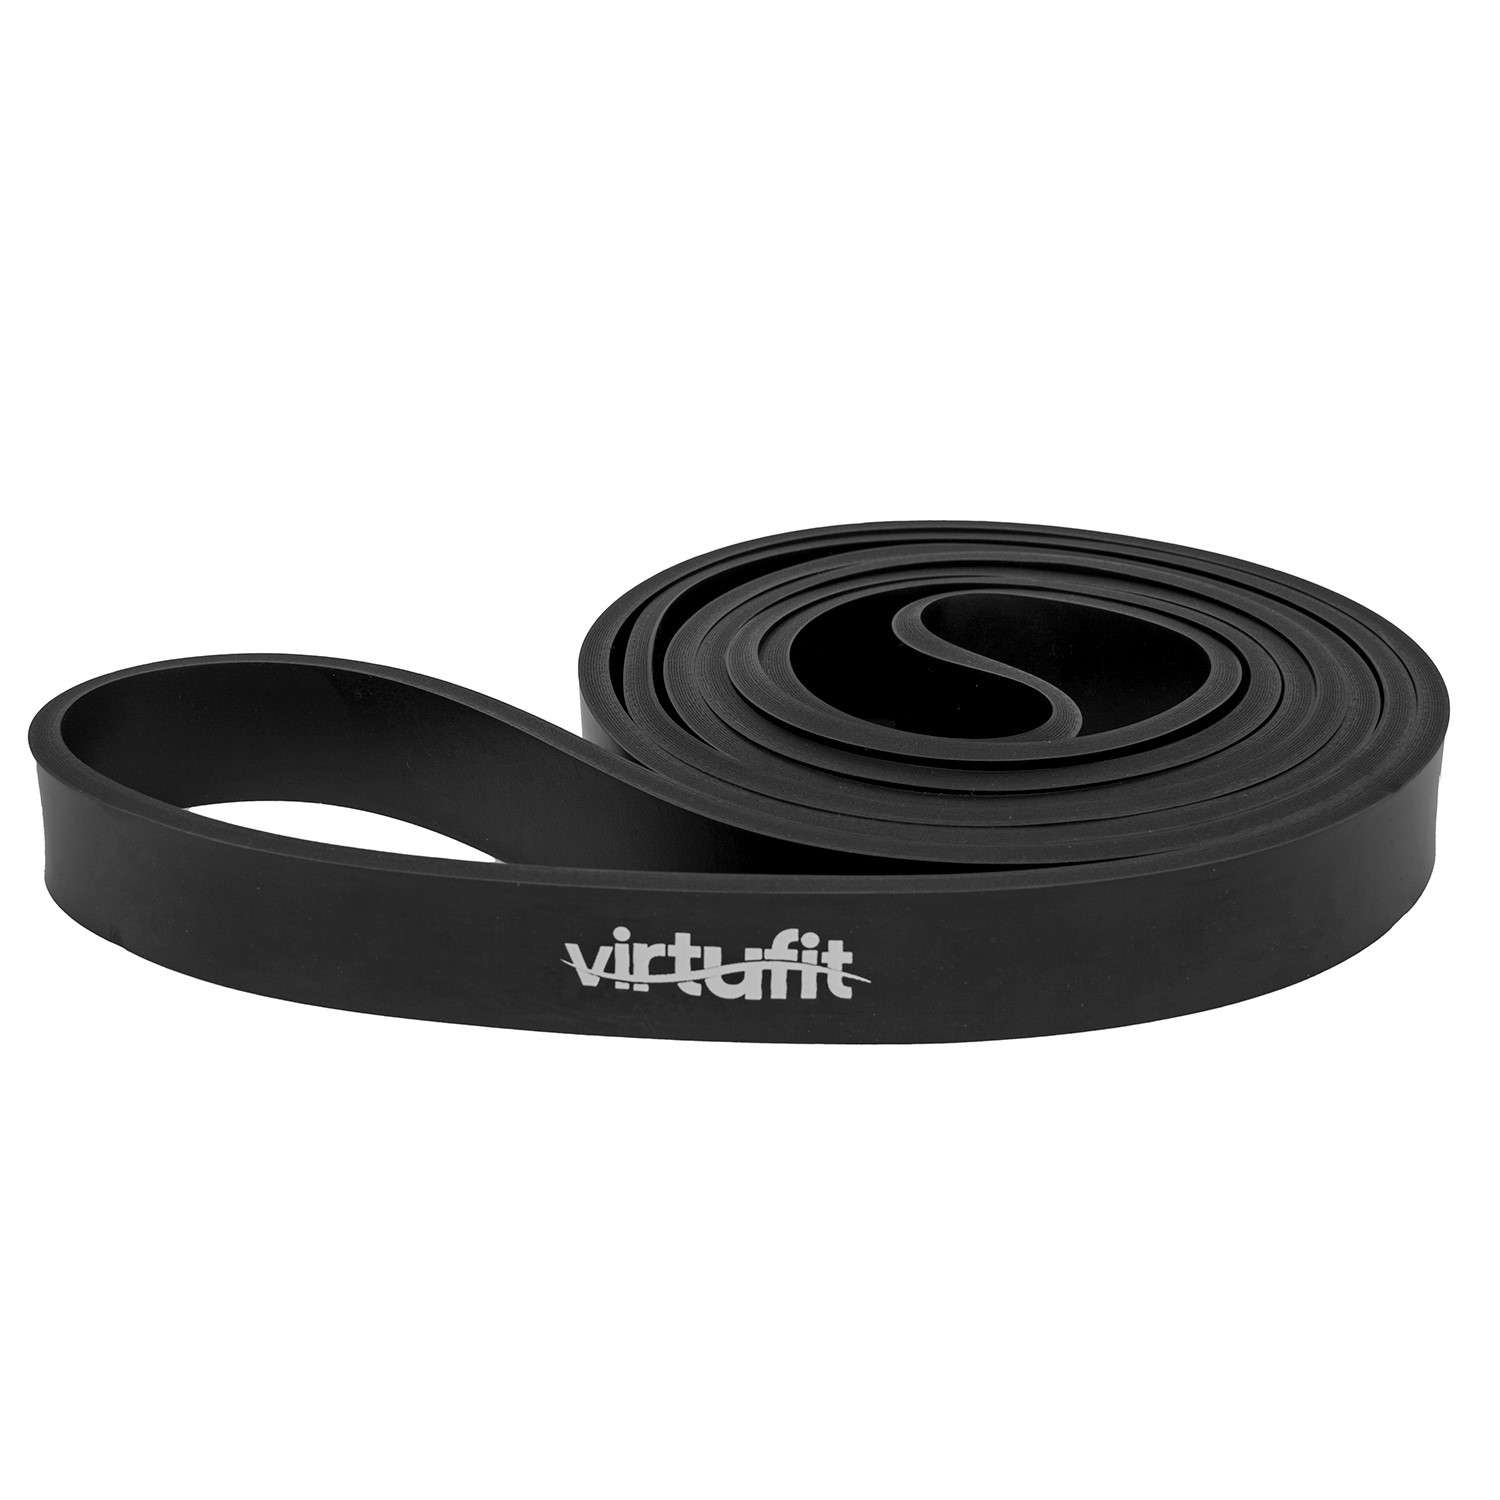 spion Afwijzen Realistisch VirtuFit Pro Power Band - Weerstandskabel - Fitness Elastiek - Licht (22  mm) - Zwart | Online kopen via Fitness-webshop.com